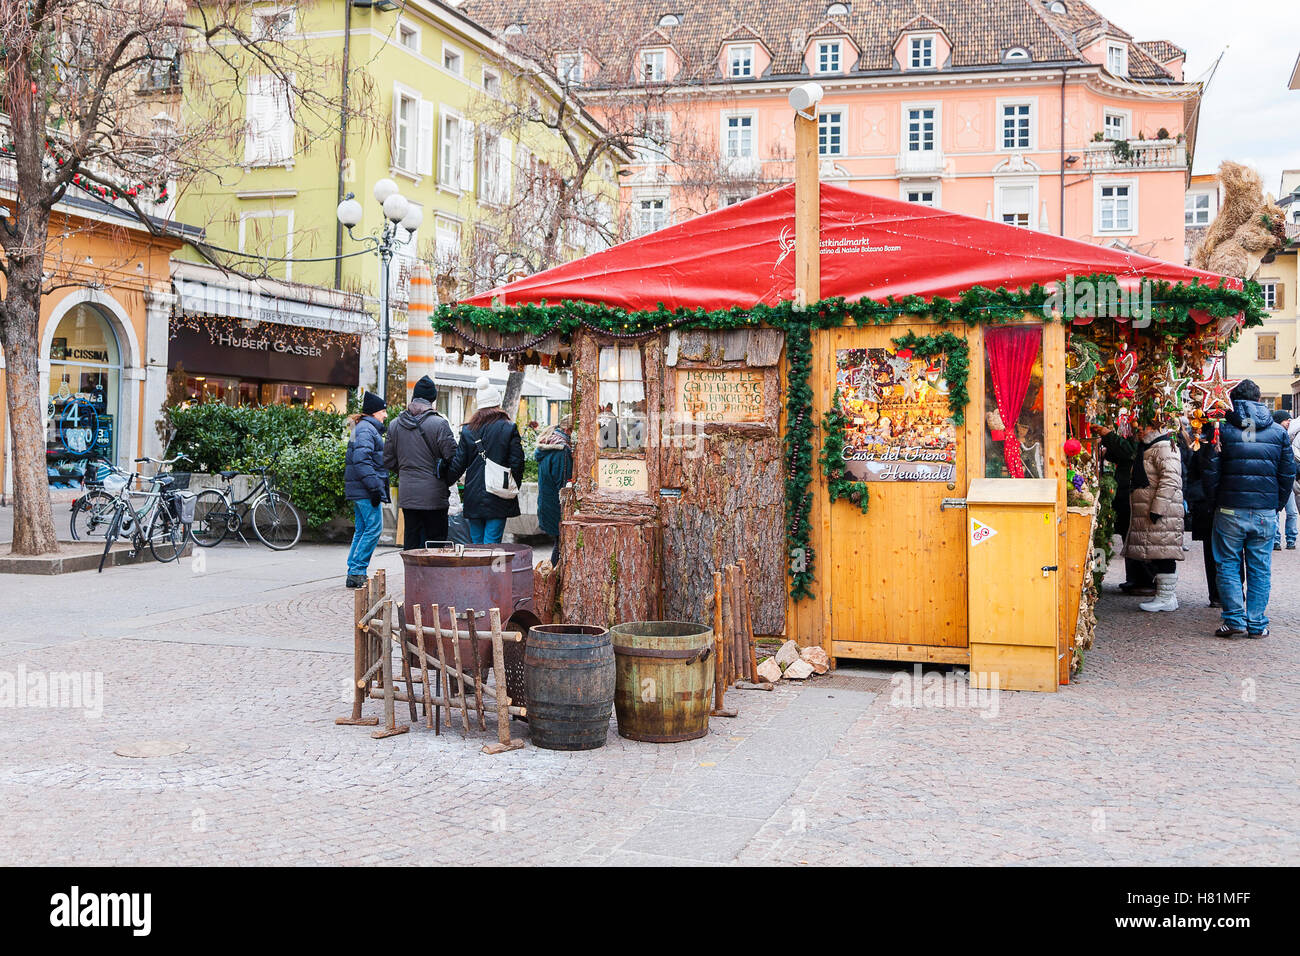 Christmas market, walther square,Bolzano,Trentino Alto Adige,sudtirol,Italy, Europe Stock Photo